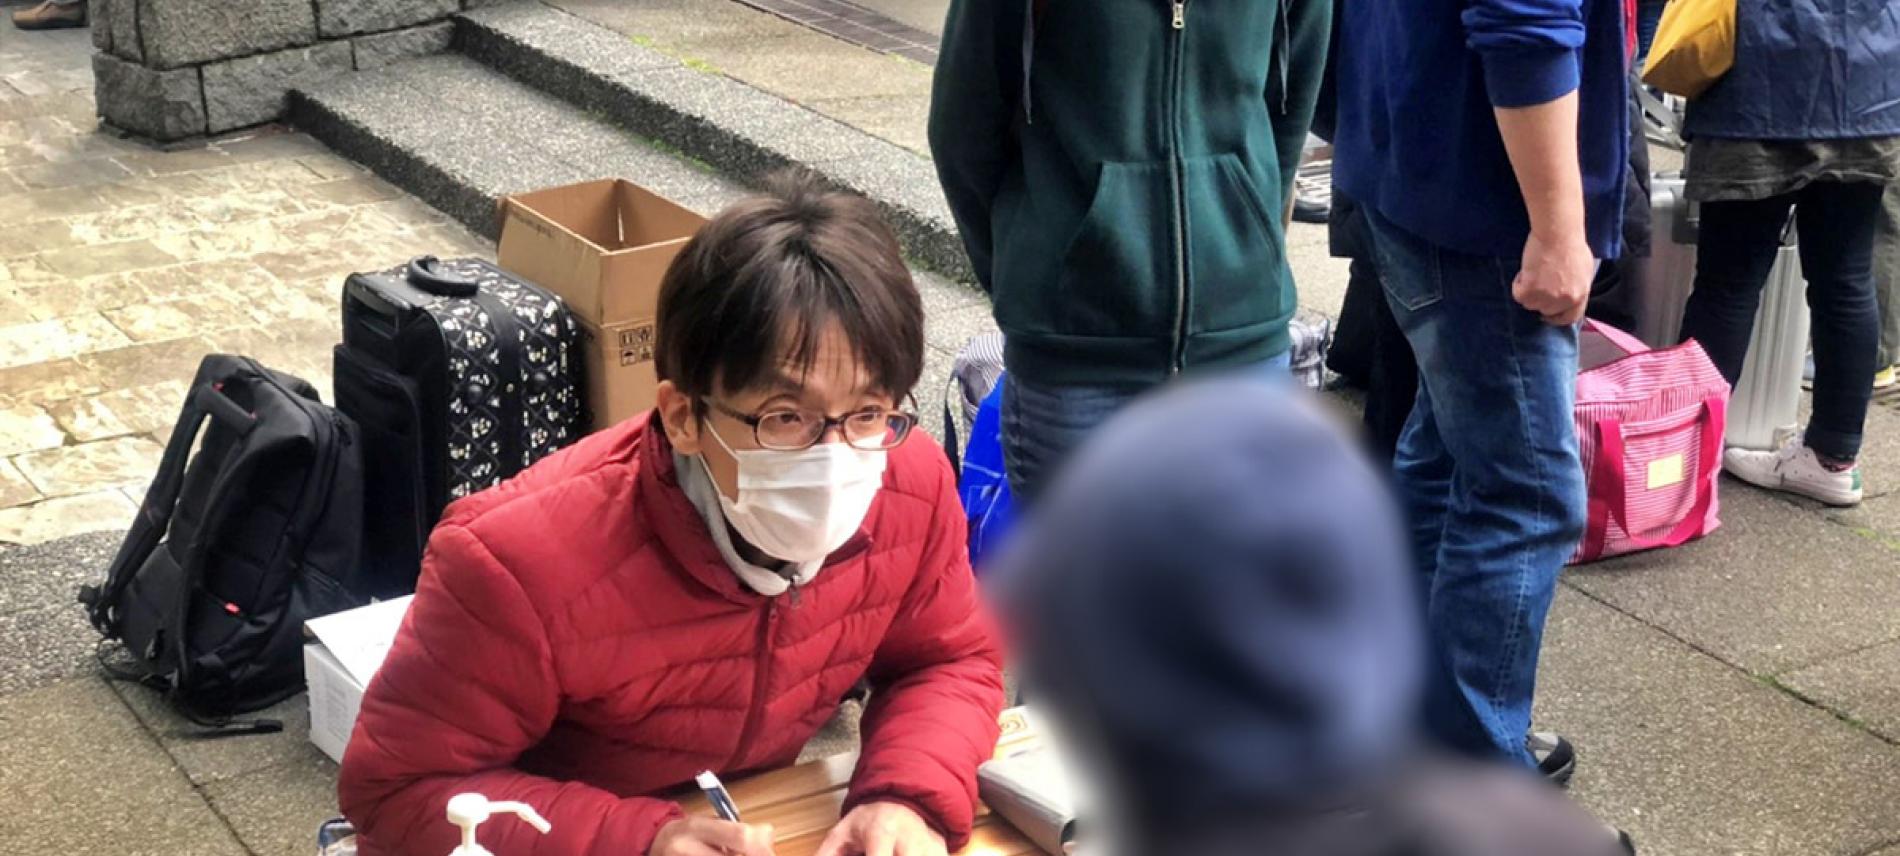 Ärzte der Welt Japan führt für Obdachlose Informationskampagnen durch. Foto: Ärzte der Welt